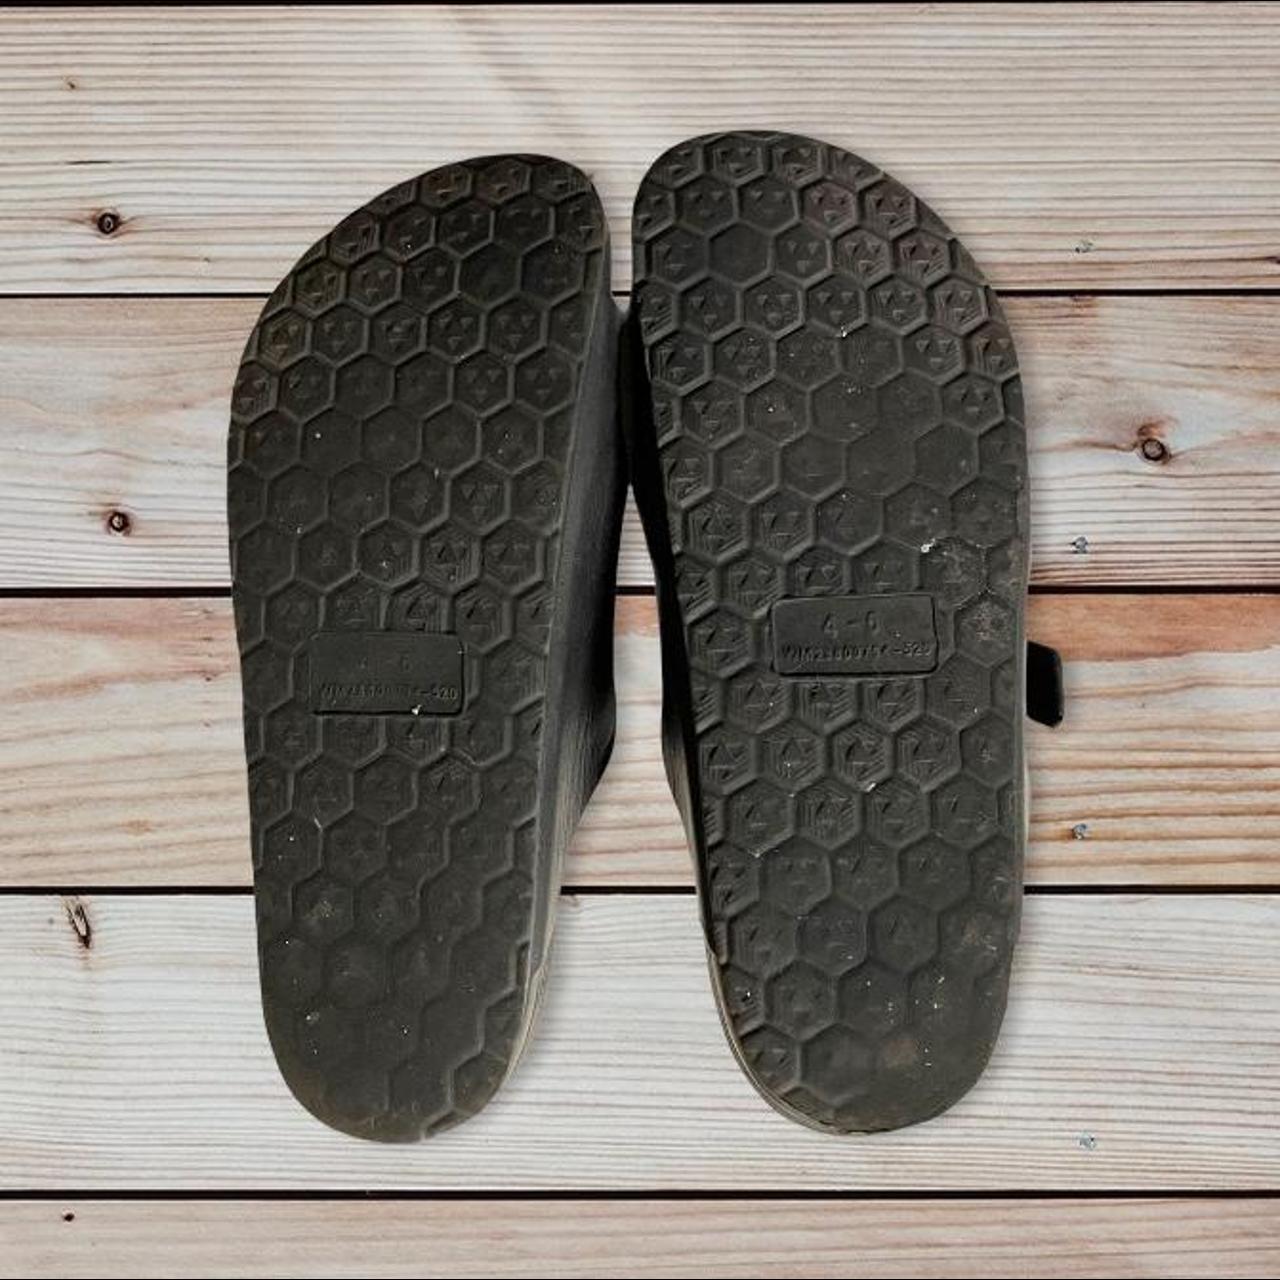 Product Image 2 - Black Birkenstock like sandals 
Used